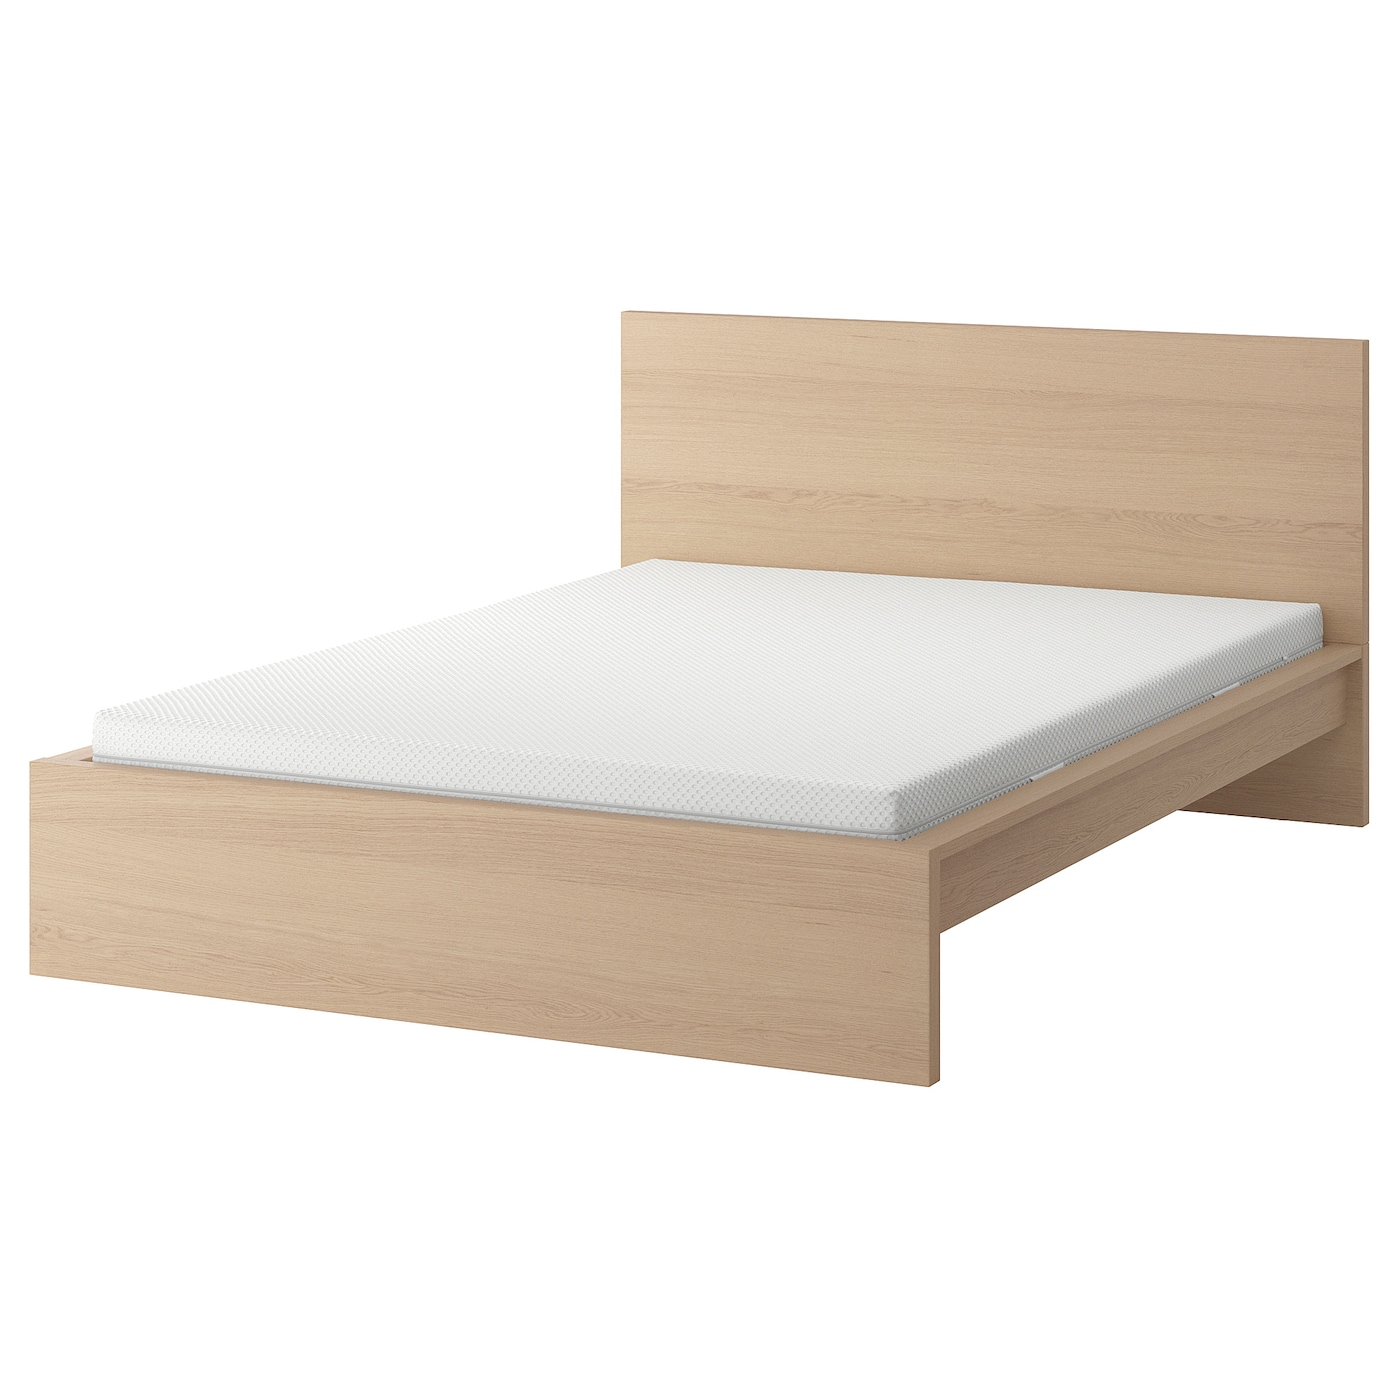 Кровать - IKEA MALM, 200х160 см, матрас средне-жесткий, под беленый дуб, МАЛЬМ ИКЕА